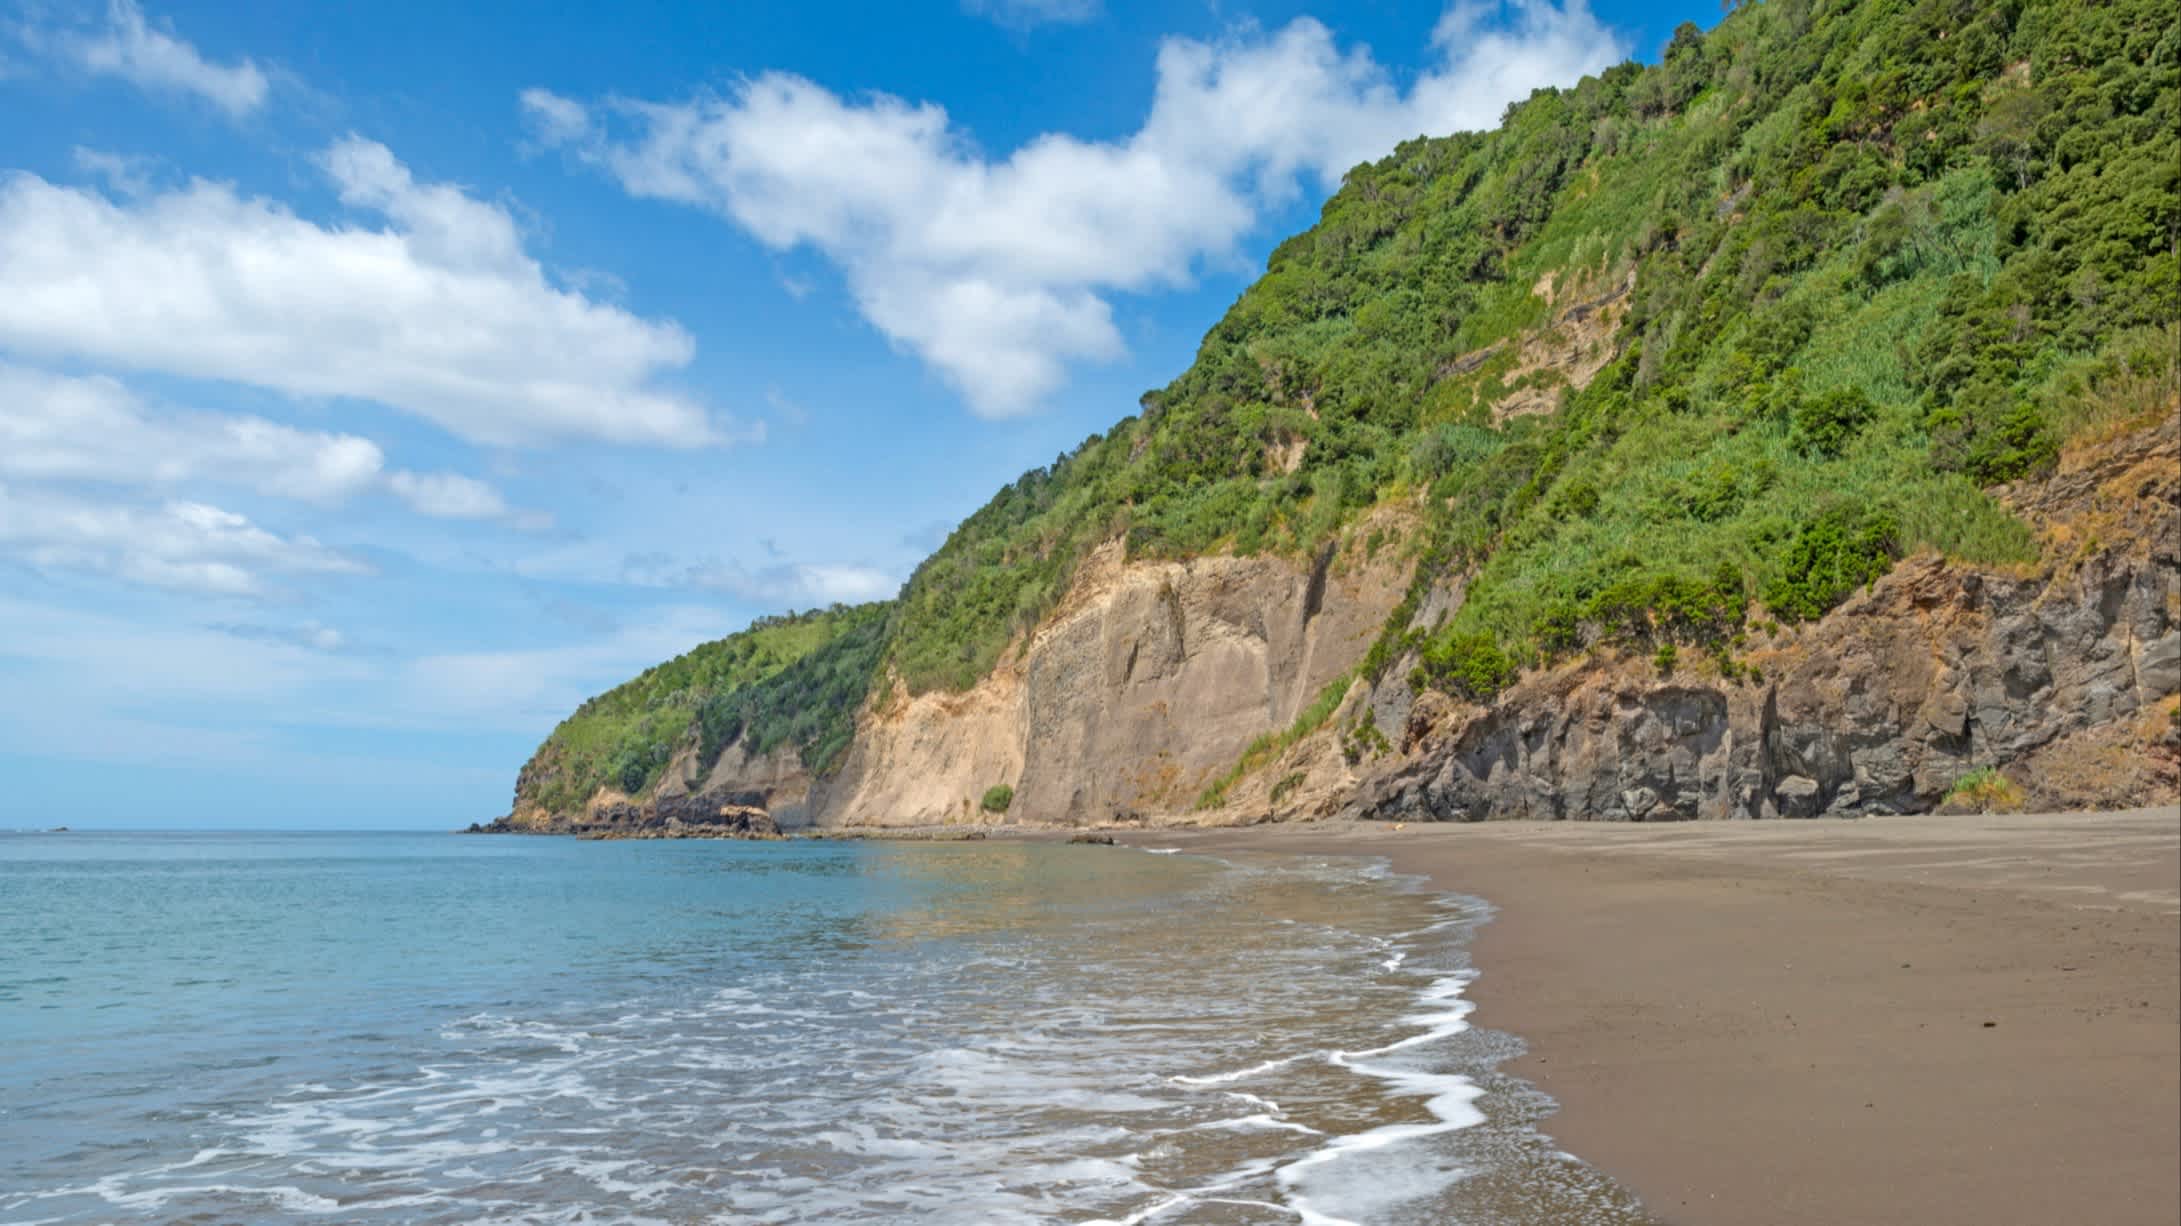 Vue sur le sable au bord de l'eau et des falaises verdoyantes sur la plage d'Agua de Alto sur l'île de São Miguel, aux Açores, au Portugal.